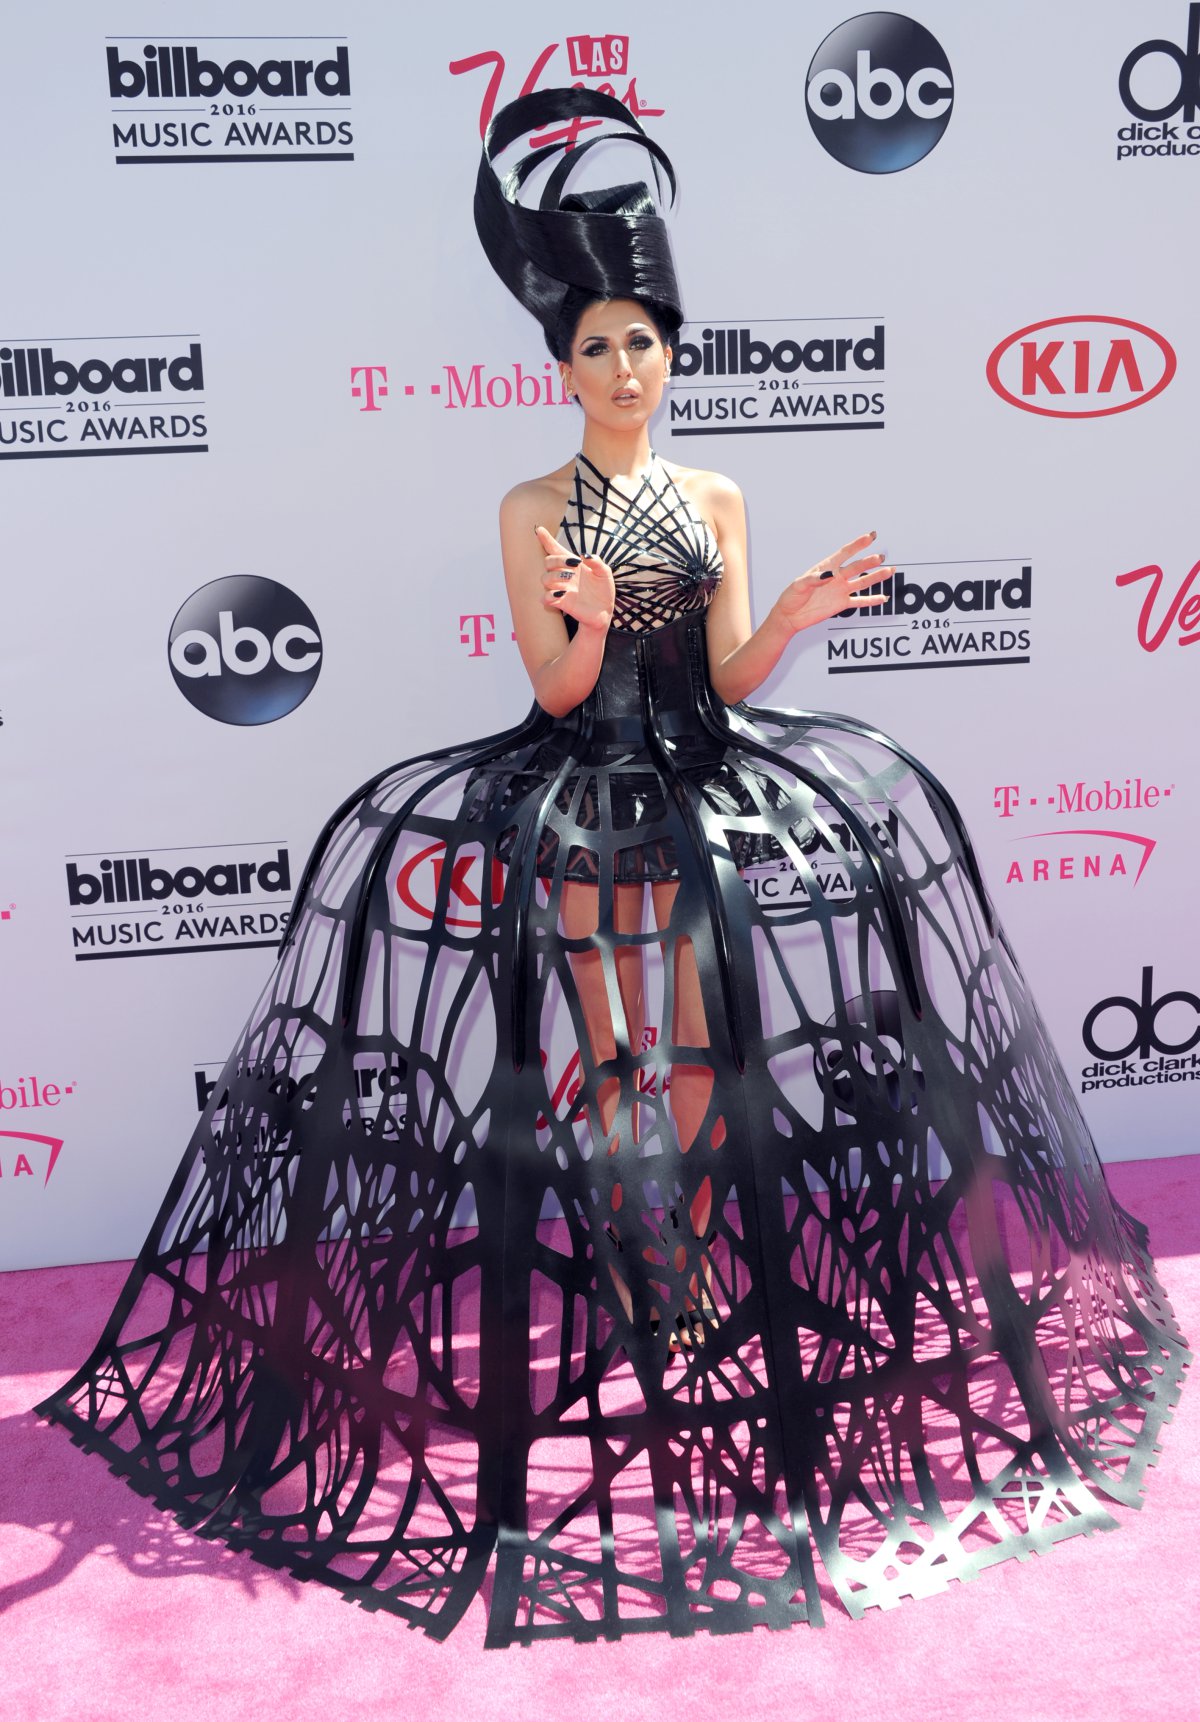 Los peores vestidos en los Billboard Music Awards